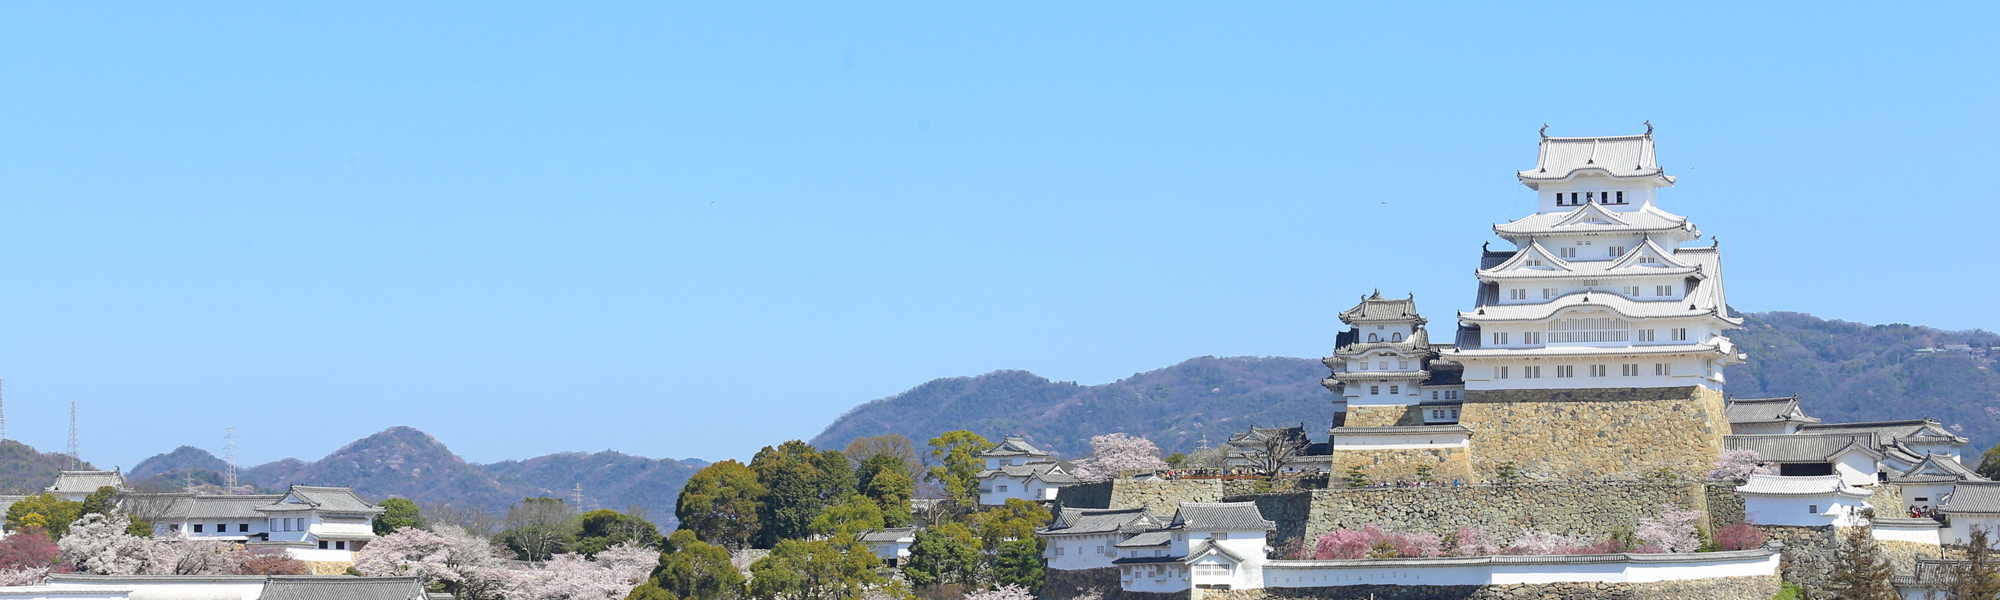 姫路城と桜/姫路フォトバンク